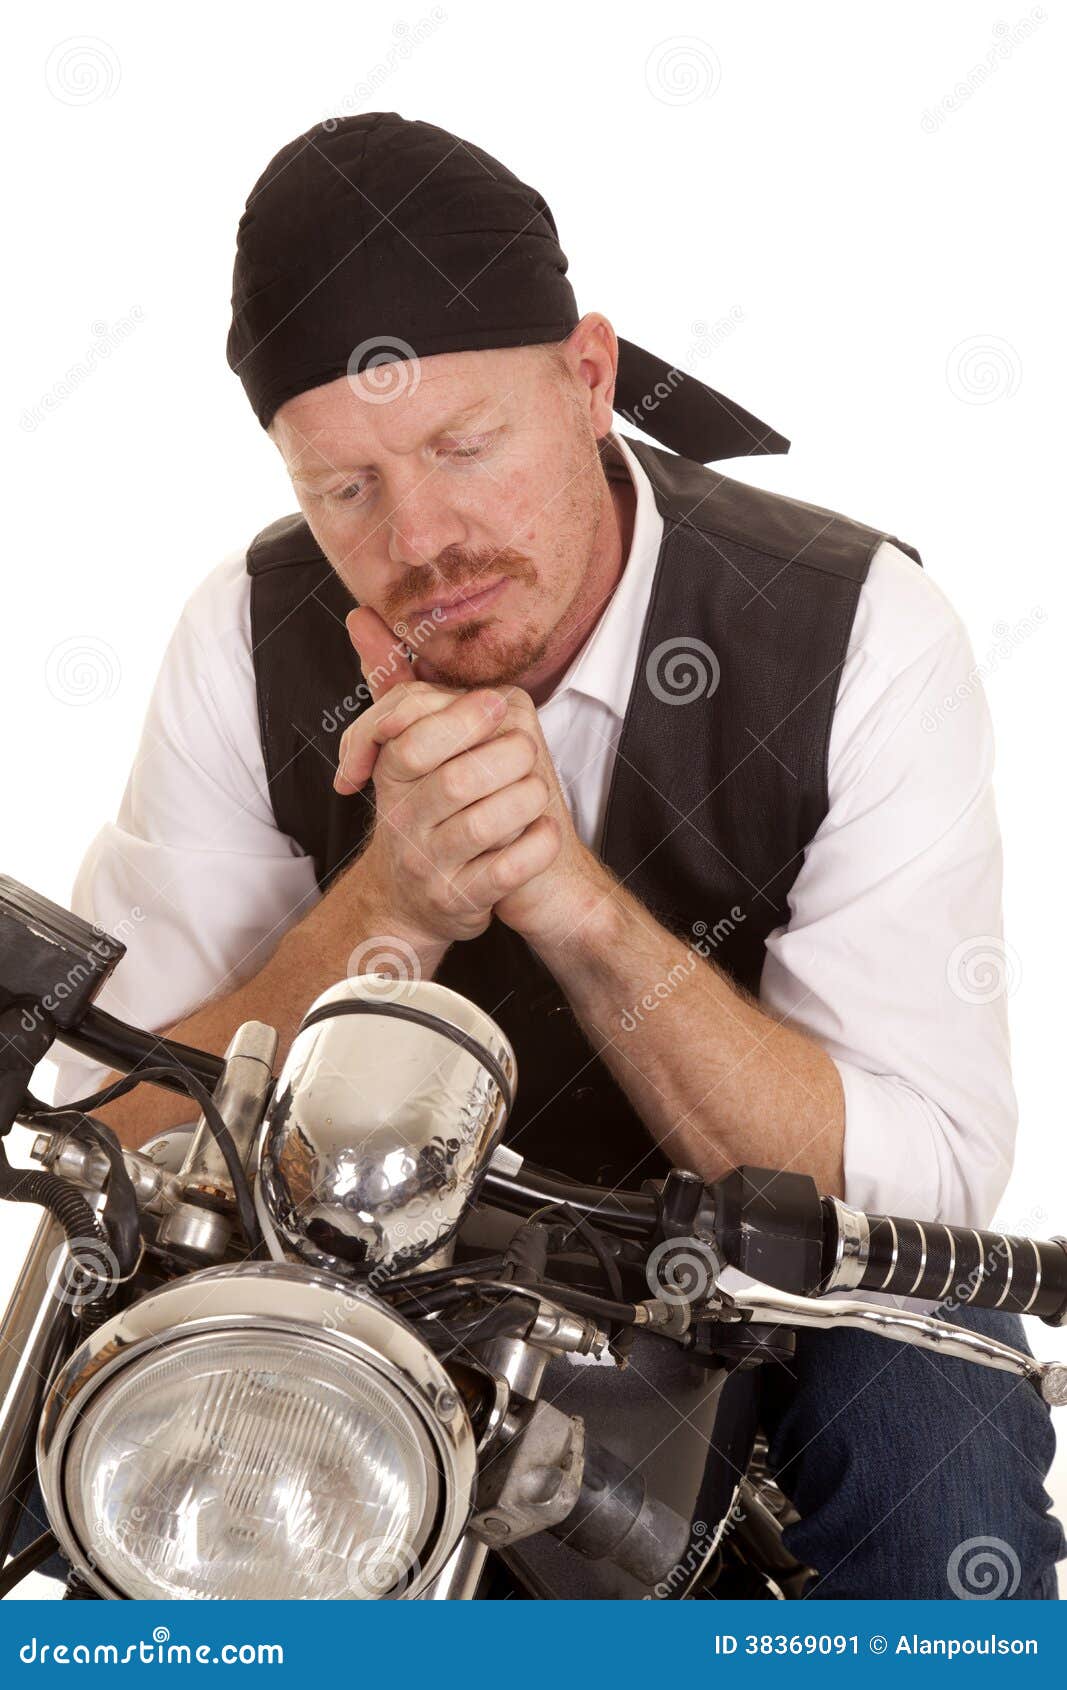 Man Bandana Motorcycle Look Down Close Stock Image - Image of gang ...